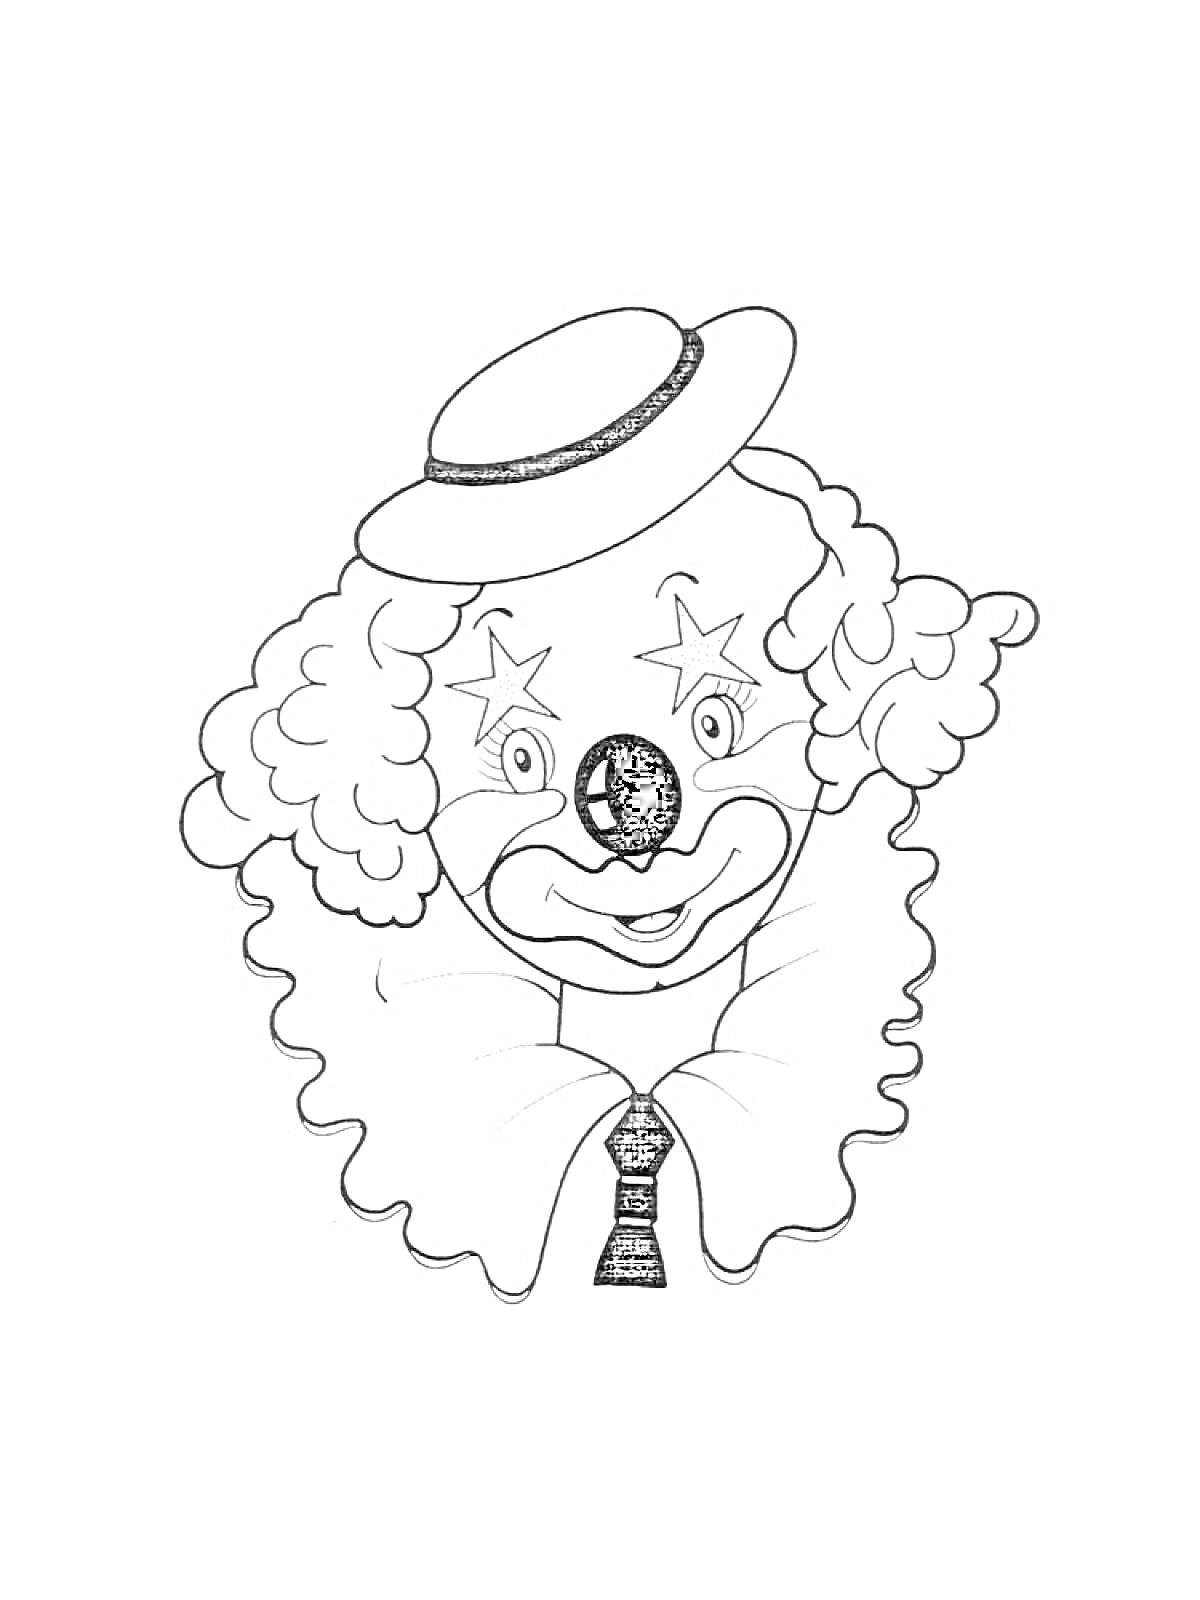 Клоун с кудрявыми волосами, в цилиндре, с нарисованными звездами вокруг глаз и с галстуком